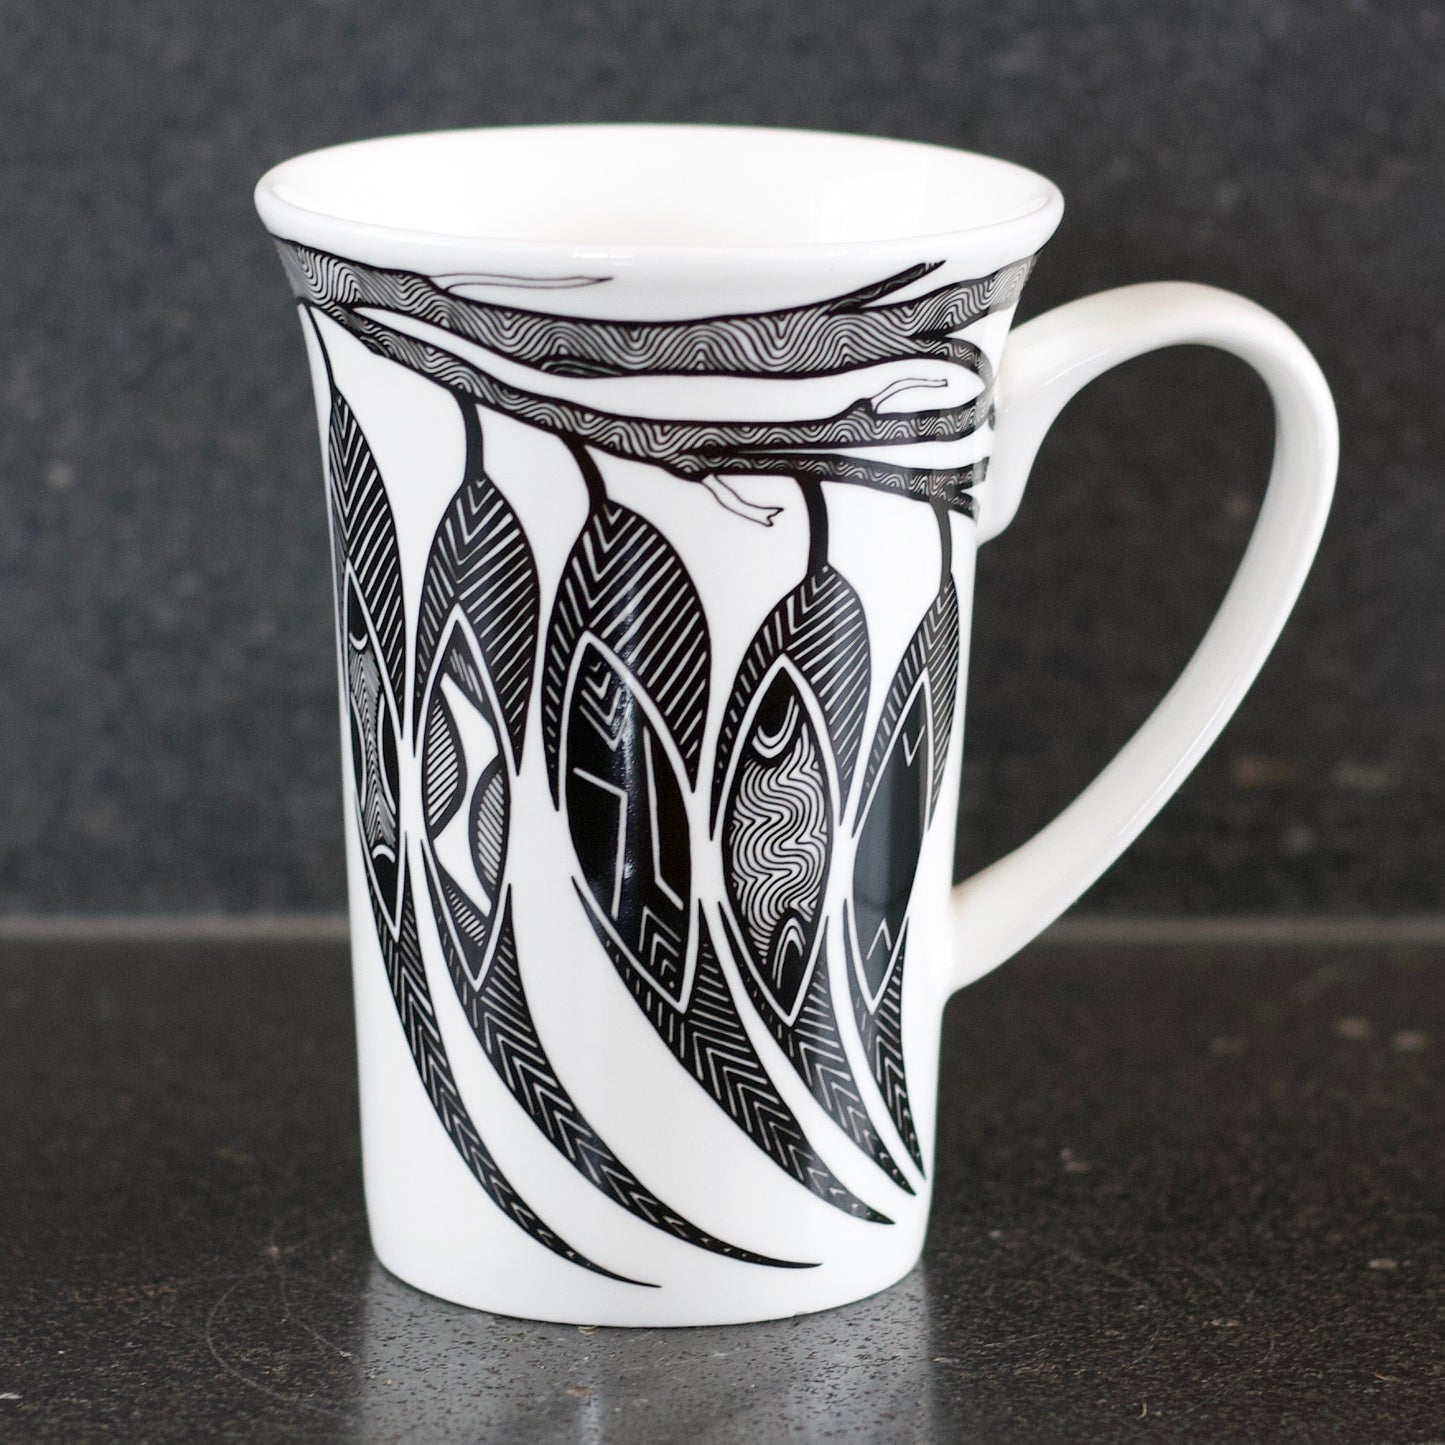 Alperstein Artist's Mug - 7 designs